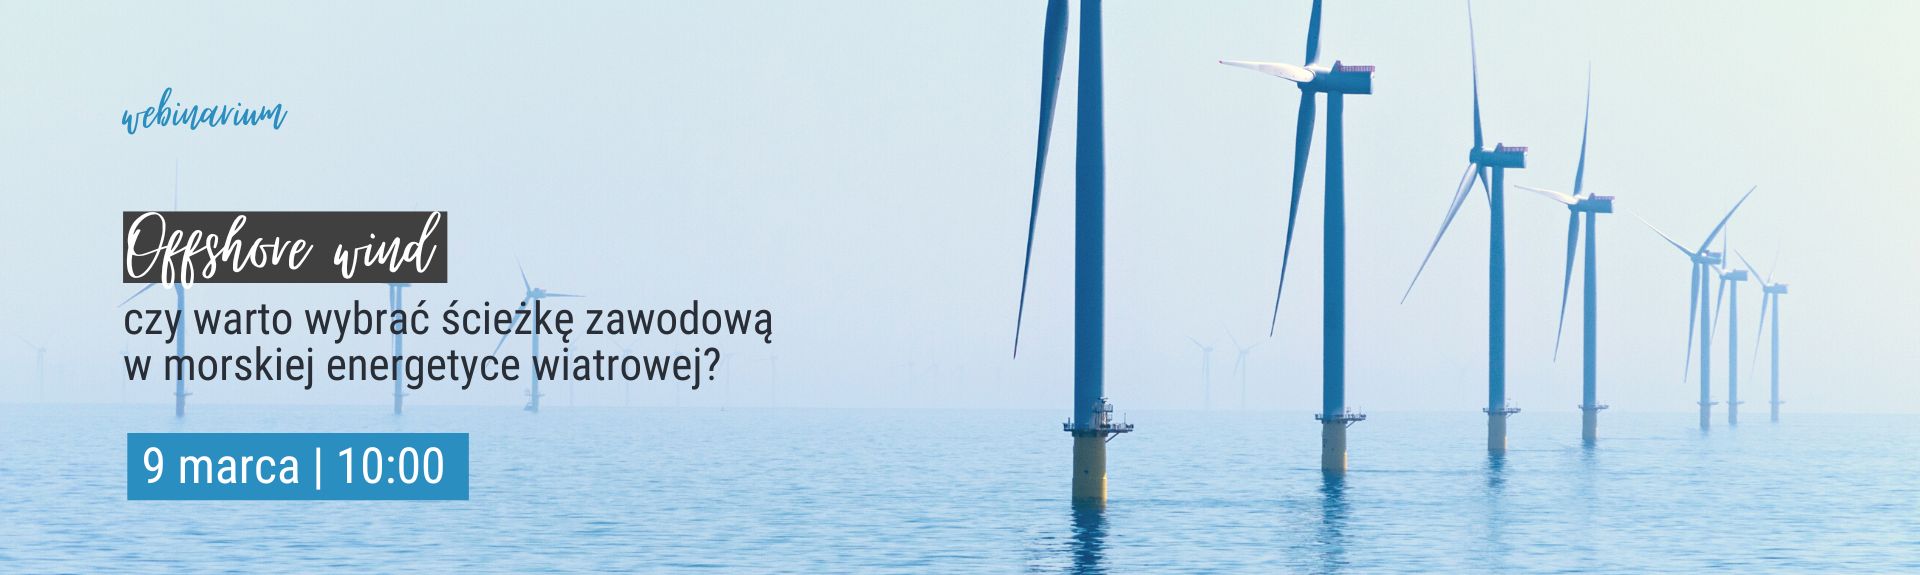 webinarium: Offshore wind - czy warto wybrać ścieżkę zawodową w morskiej energetyce wiatrowej?